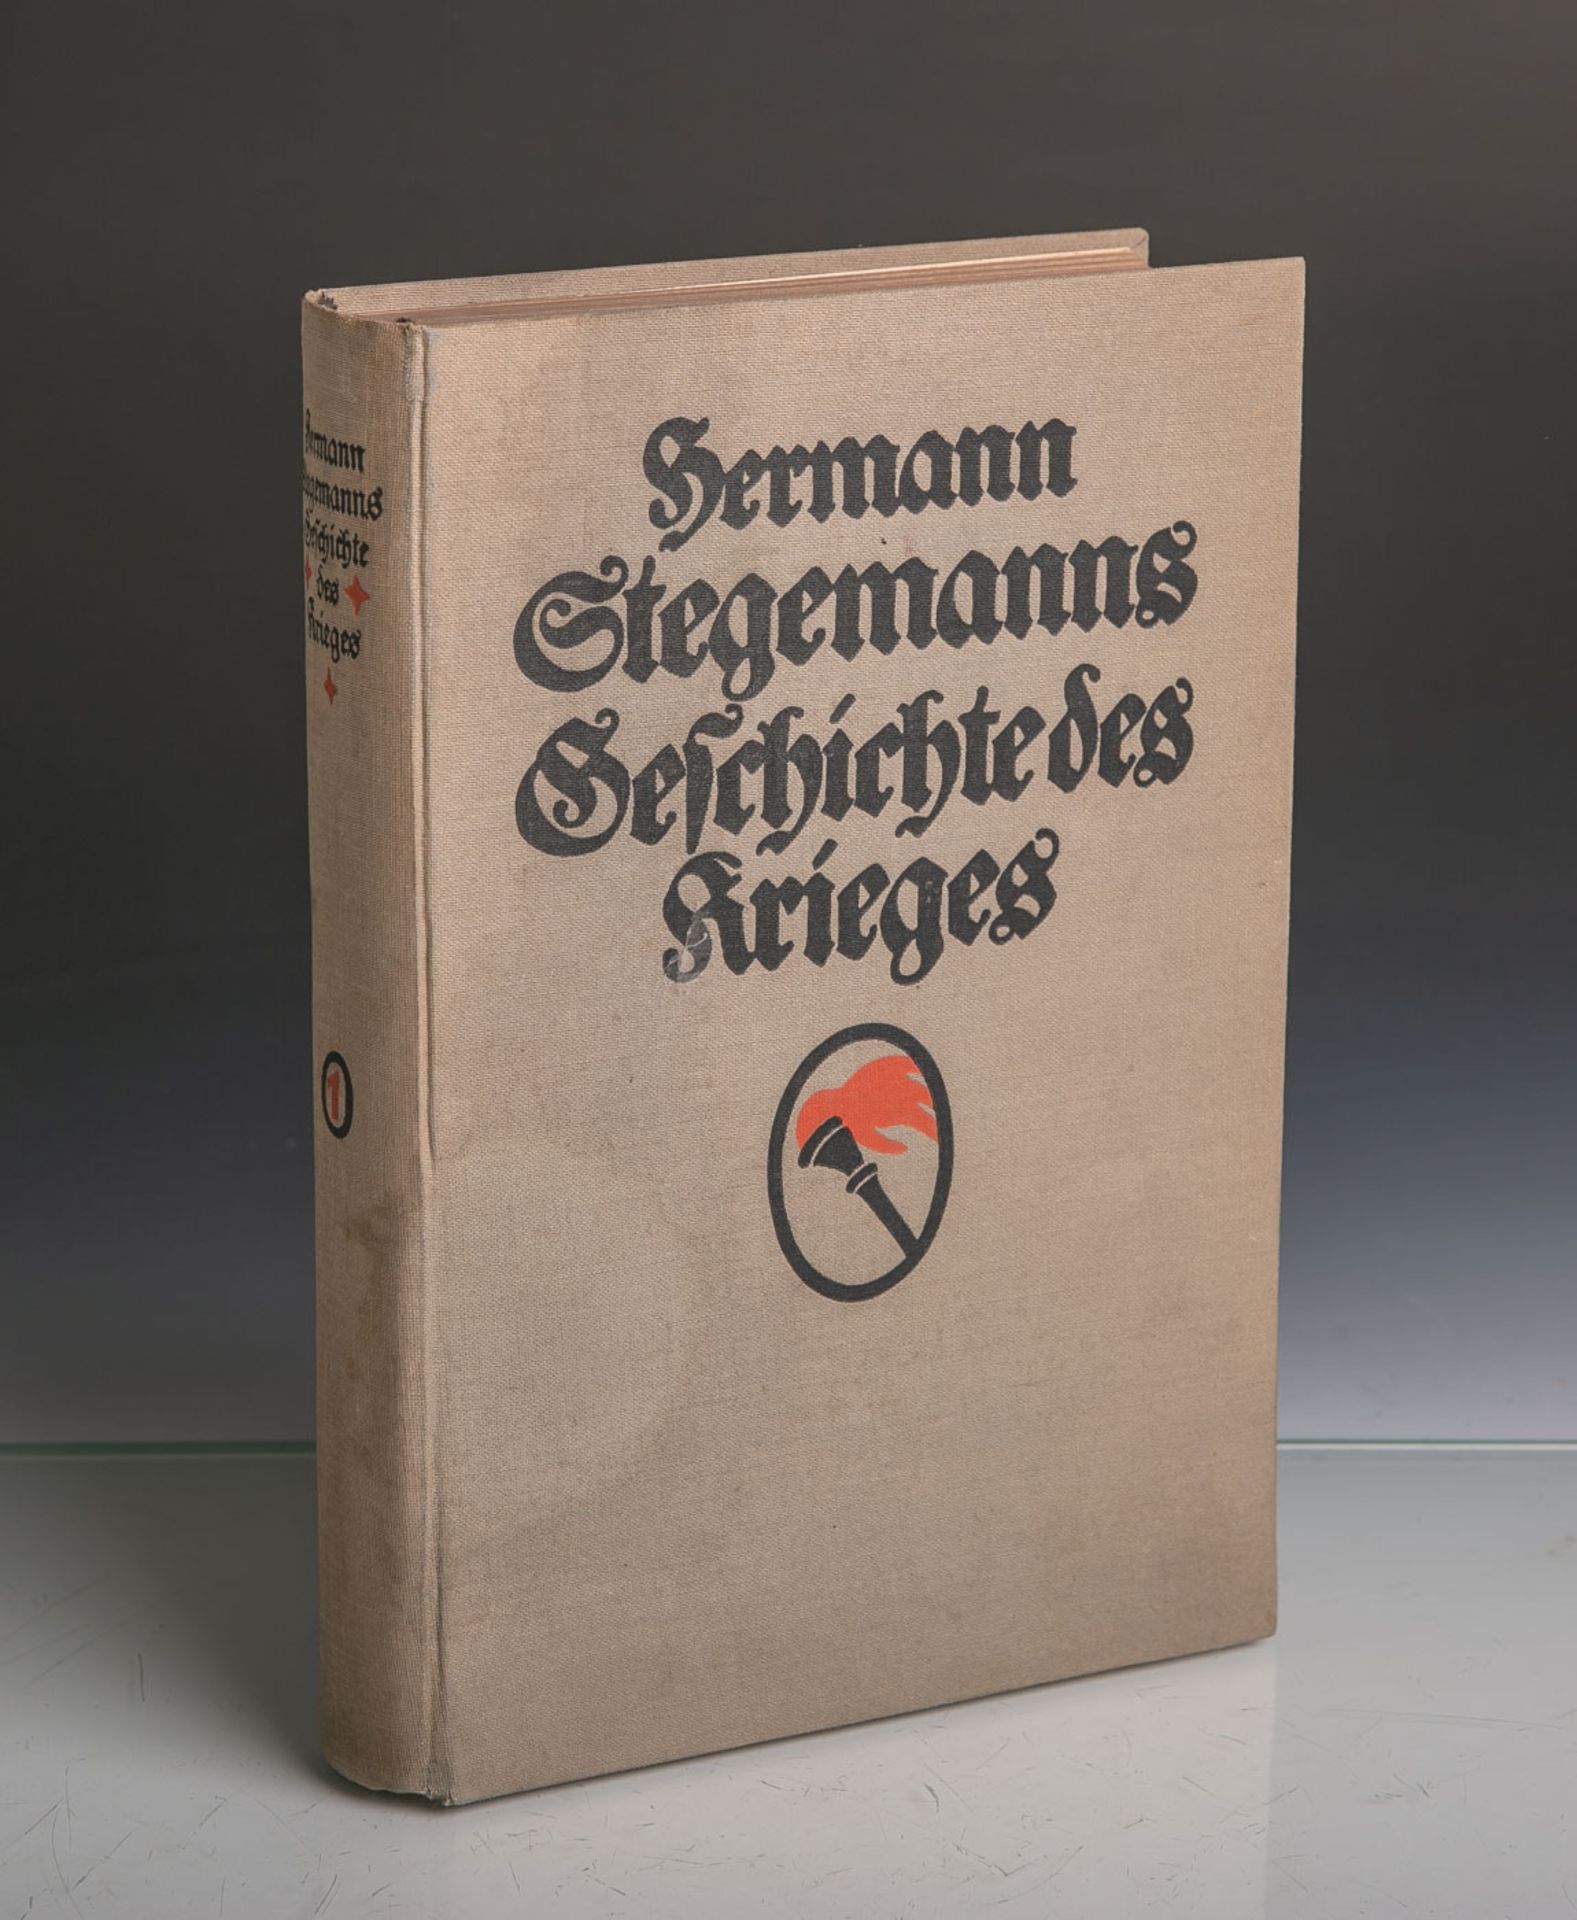 Stegemann, Hermann, "Geschichte des